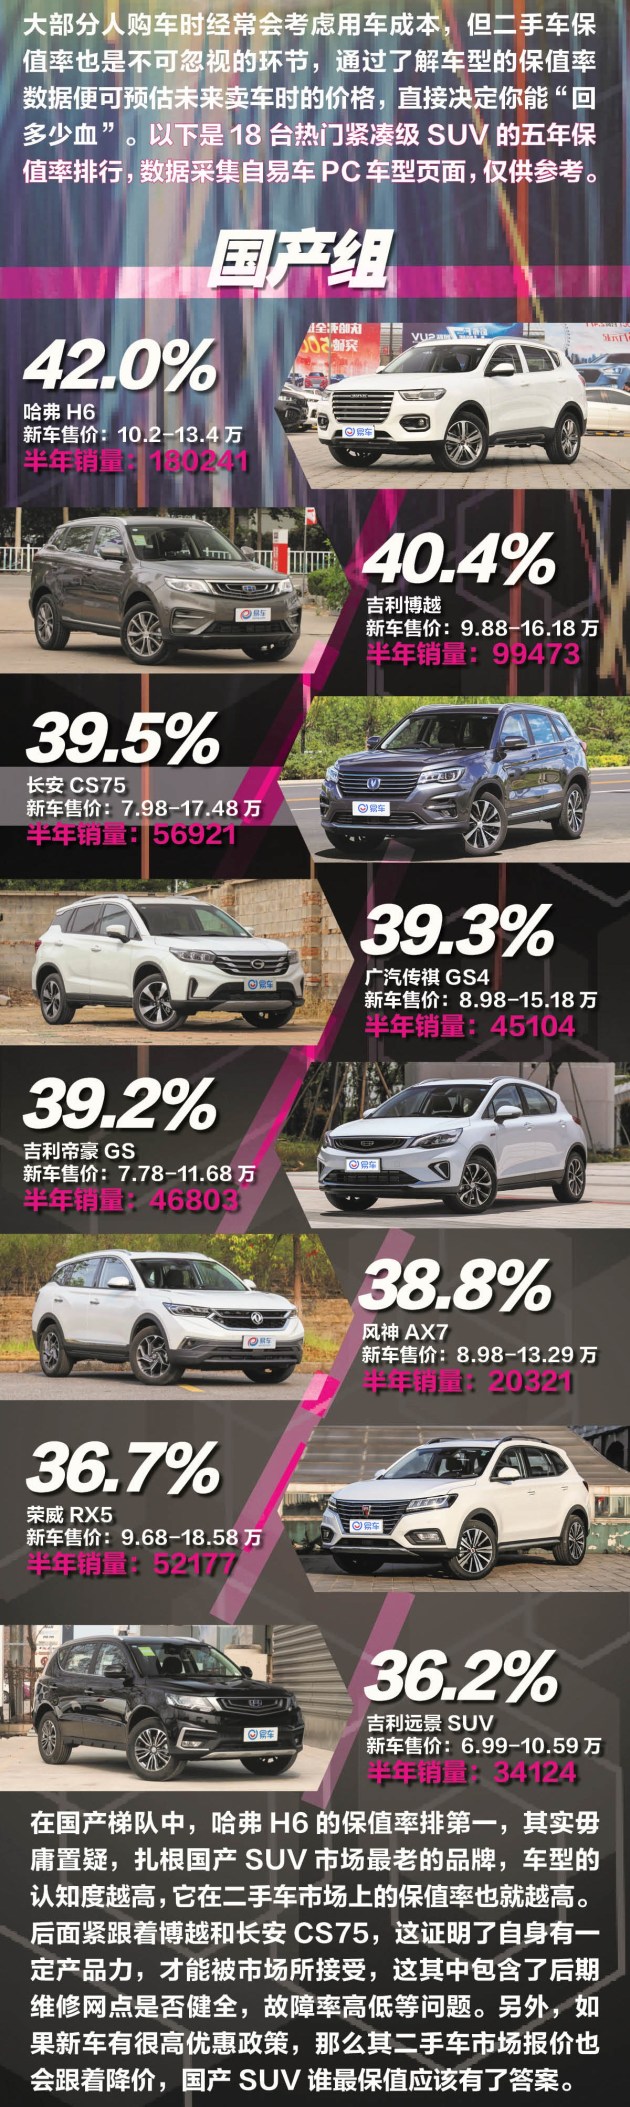 奇骏/CR-V/哈弗H6/博越/CS75 紧凑级SUV保值率排行